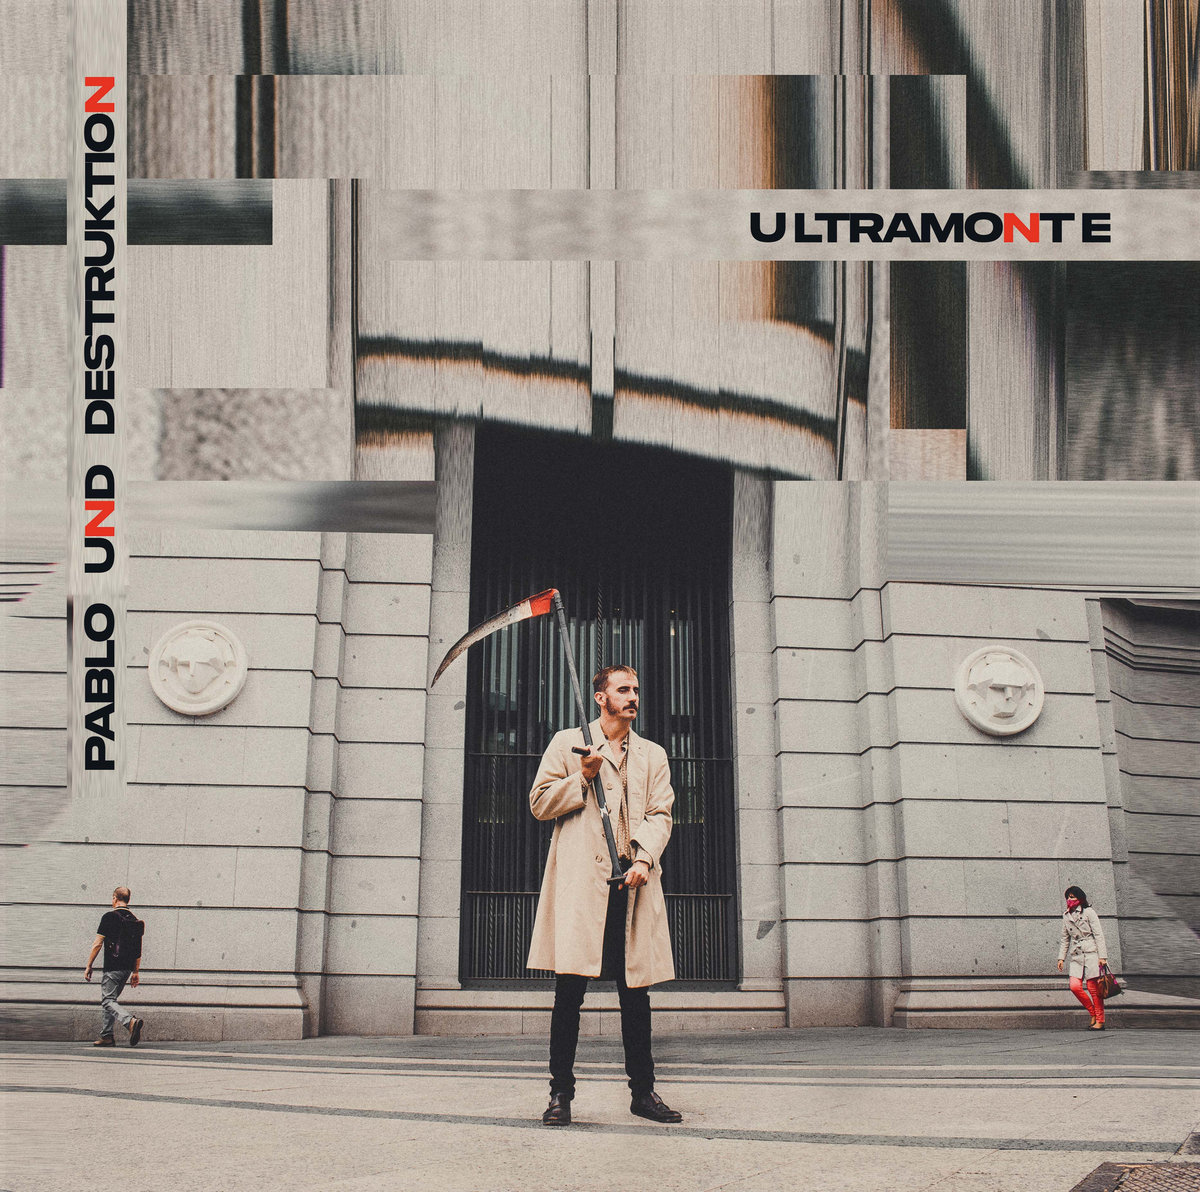 Pablo Und Destruktion "Ultramonte" LP